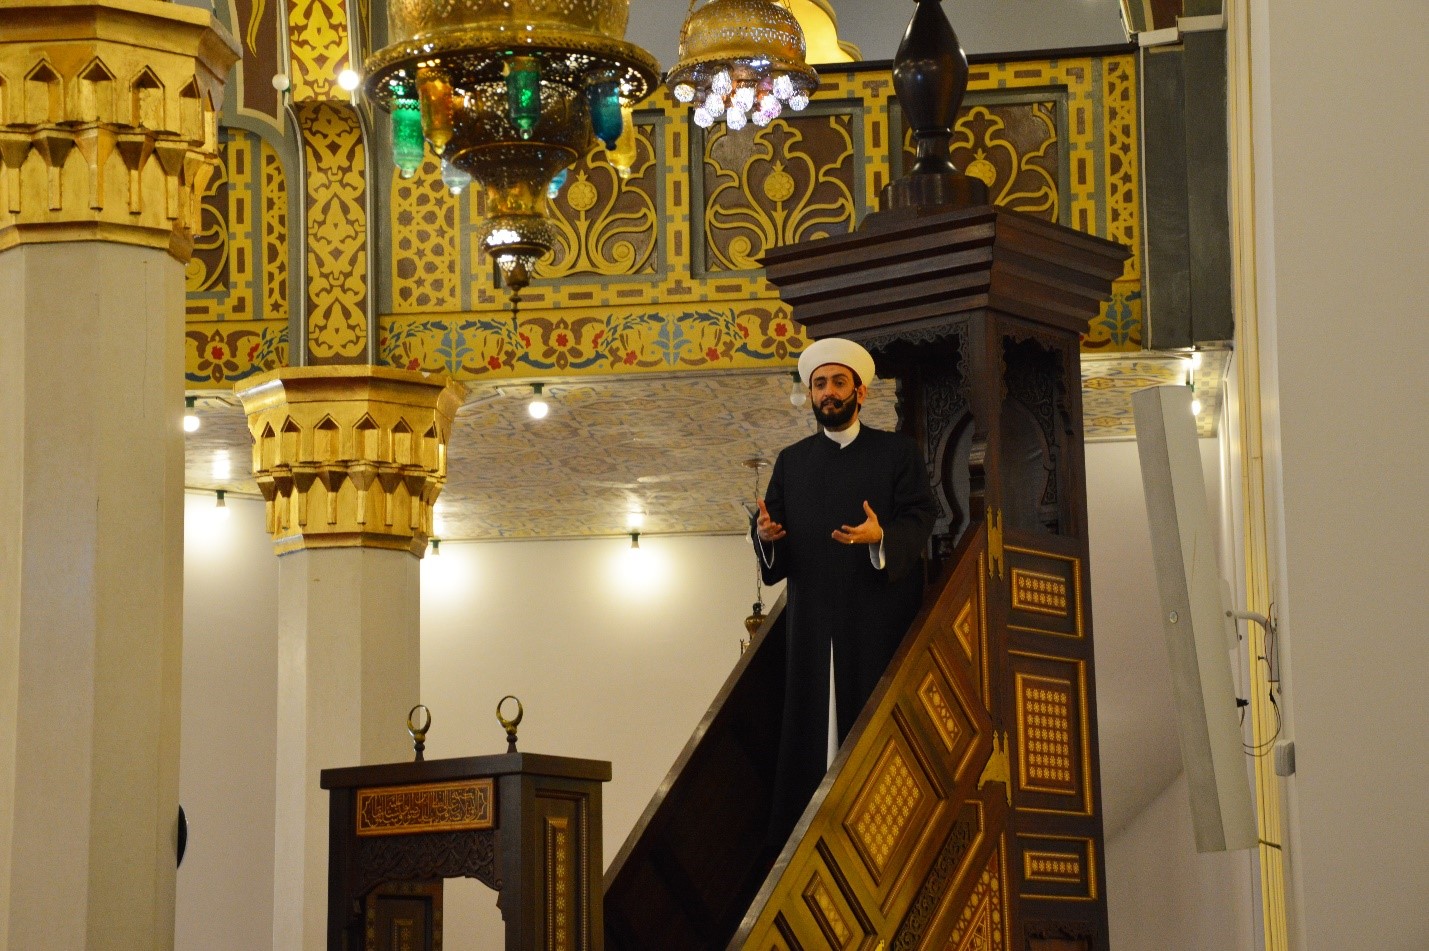 الشيخ محمد البقاعي، إمام وخطيب مسجد البرازيل في مدينة سان باولو، بالبرازيل.